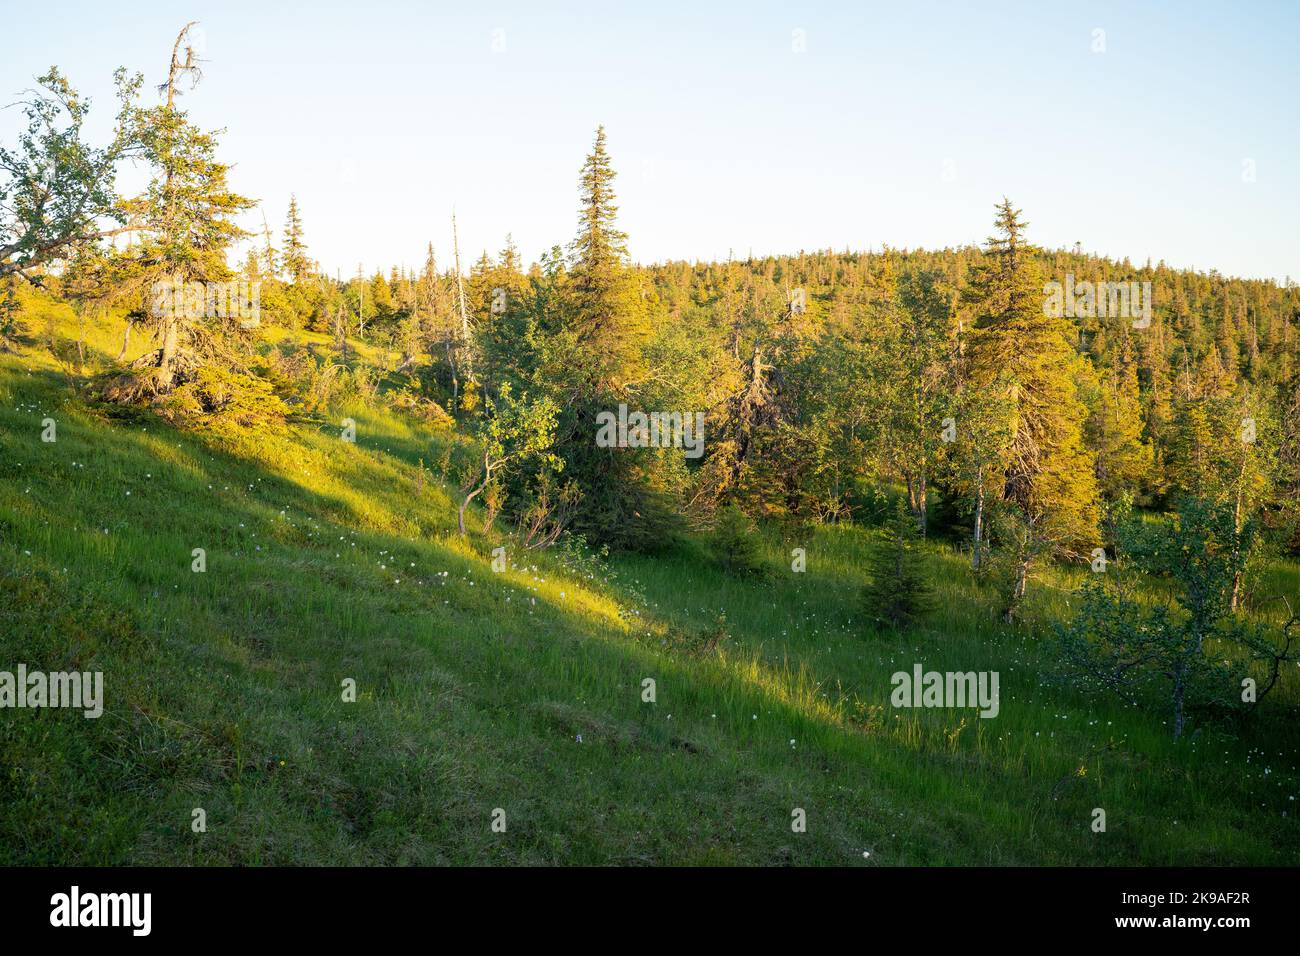 Il pendio si trova su una ripida collina durante un bellissimo tramonto estivo nel Parco Nazionale di Riisitunturi, Finlandia settentrionale. Foto Stock